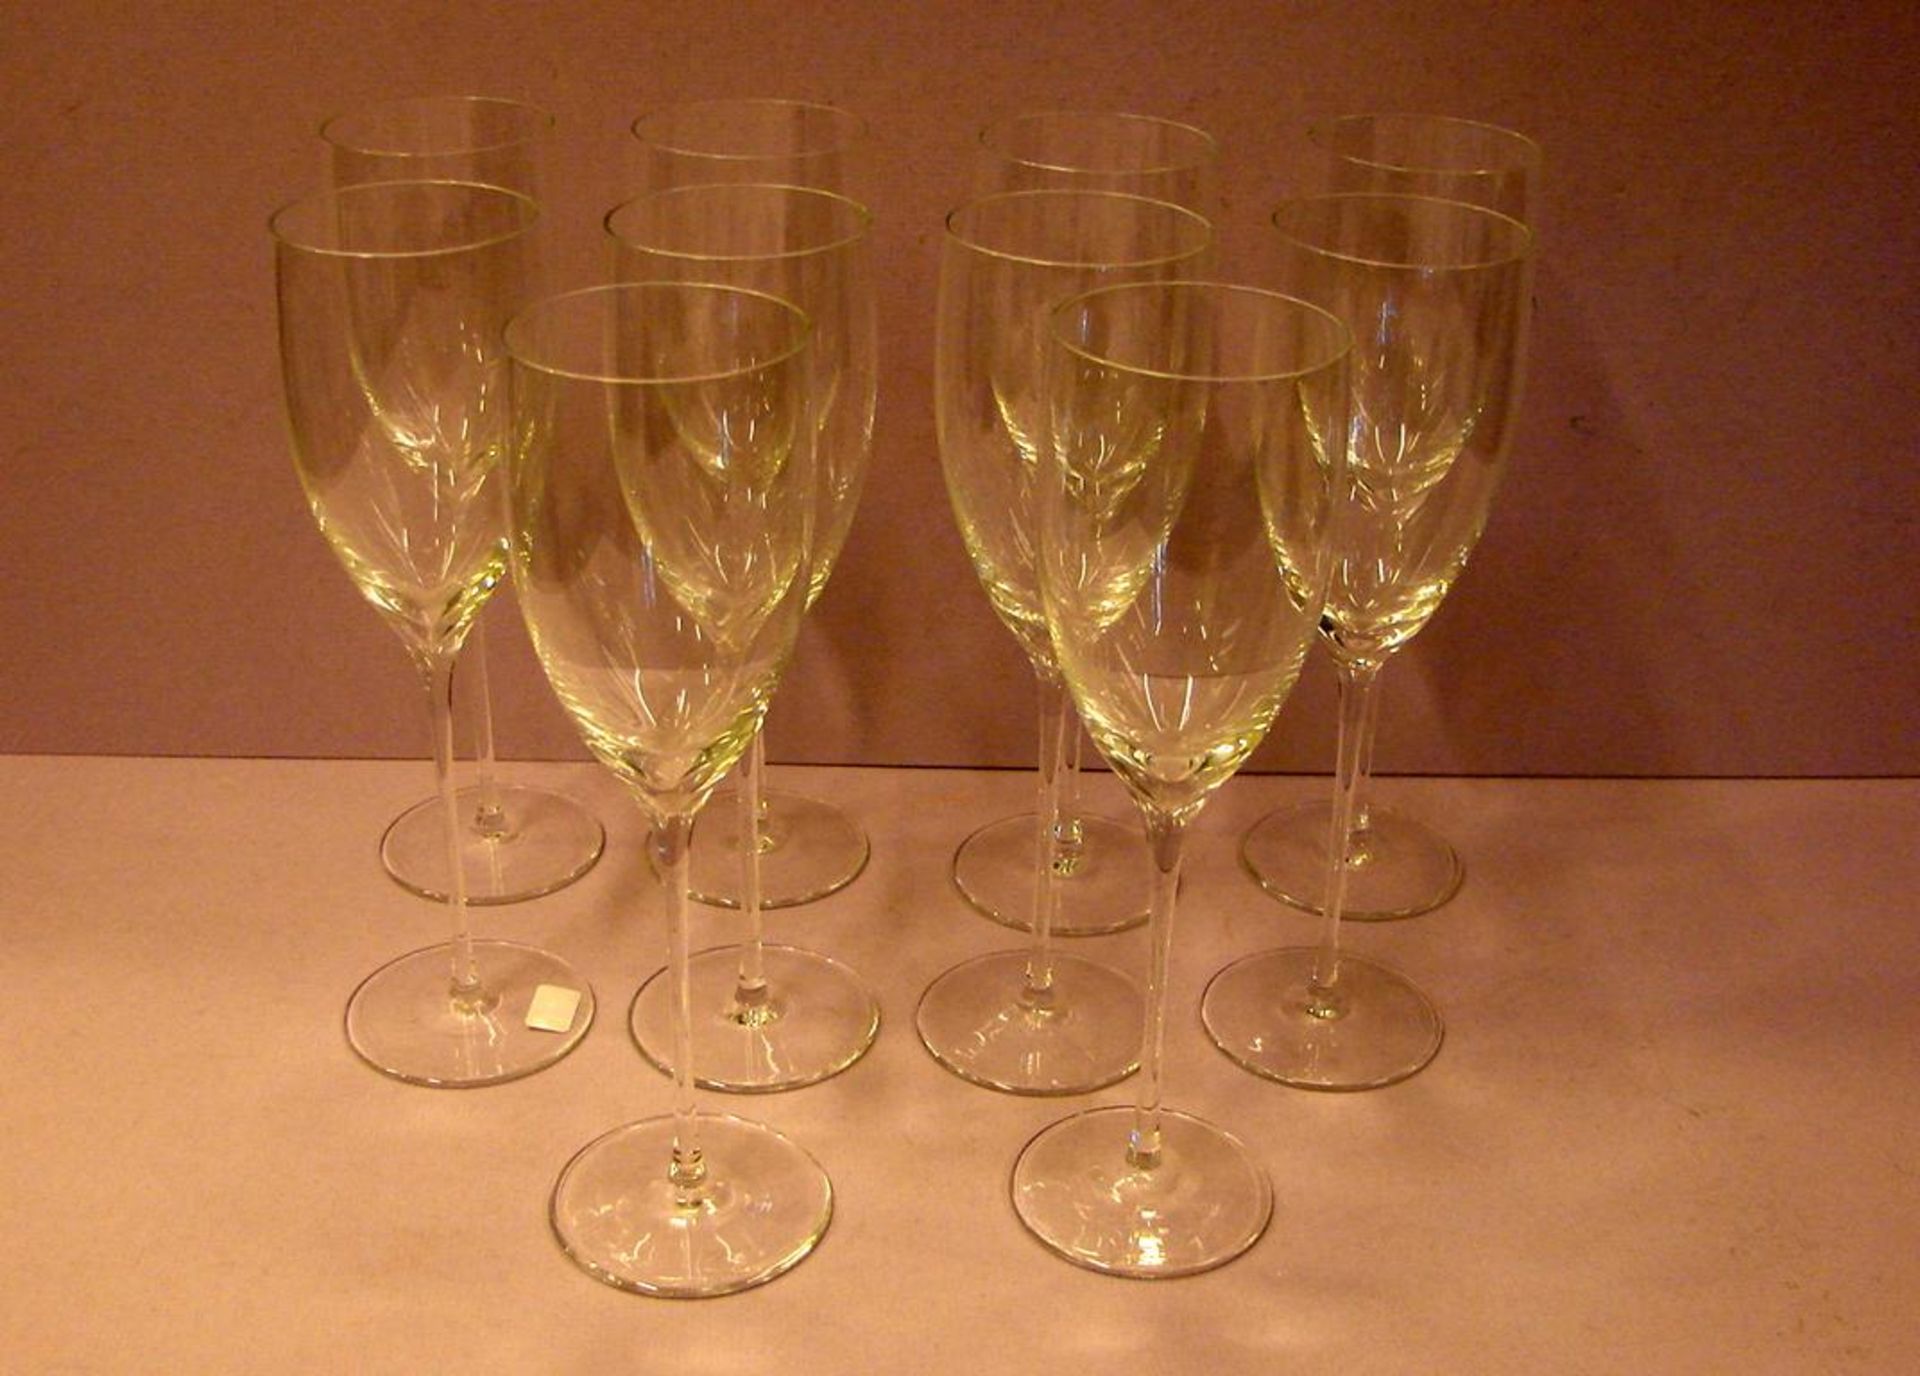 10 große Weissweingläser, Daum France, farbloses Kristallglas, am Stand bez.: Daum France, ca. 22